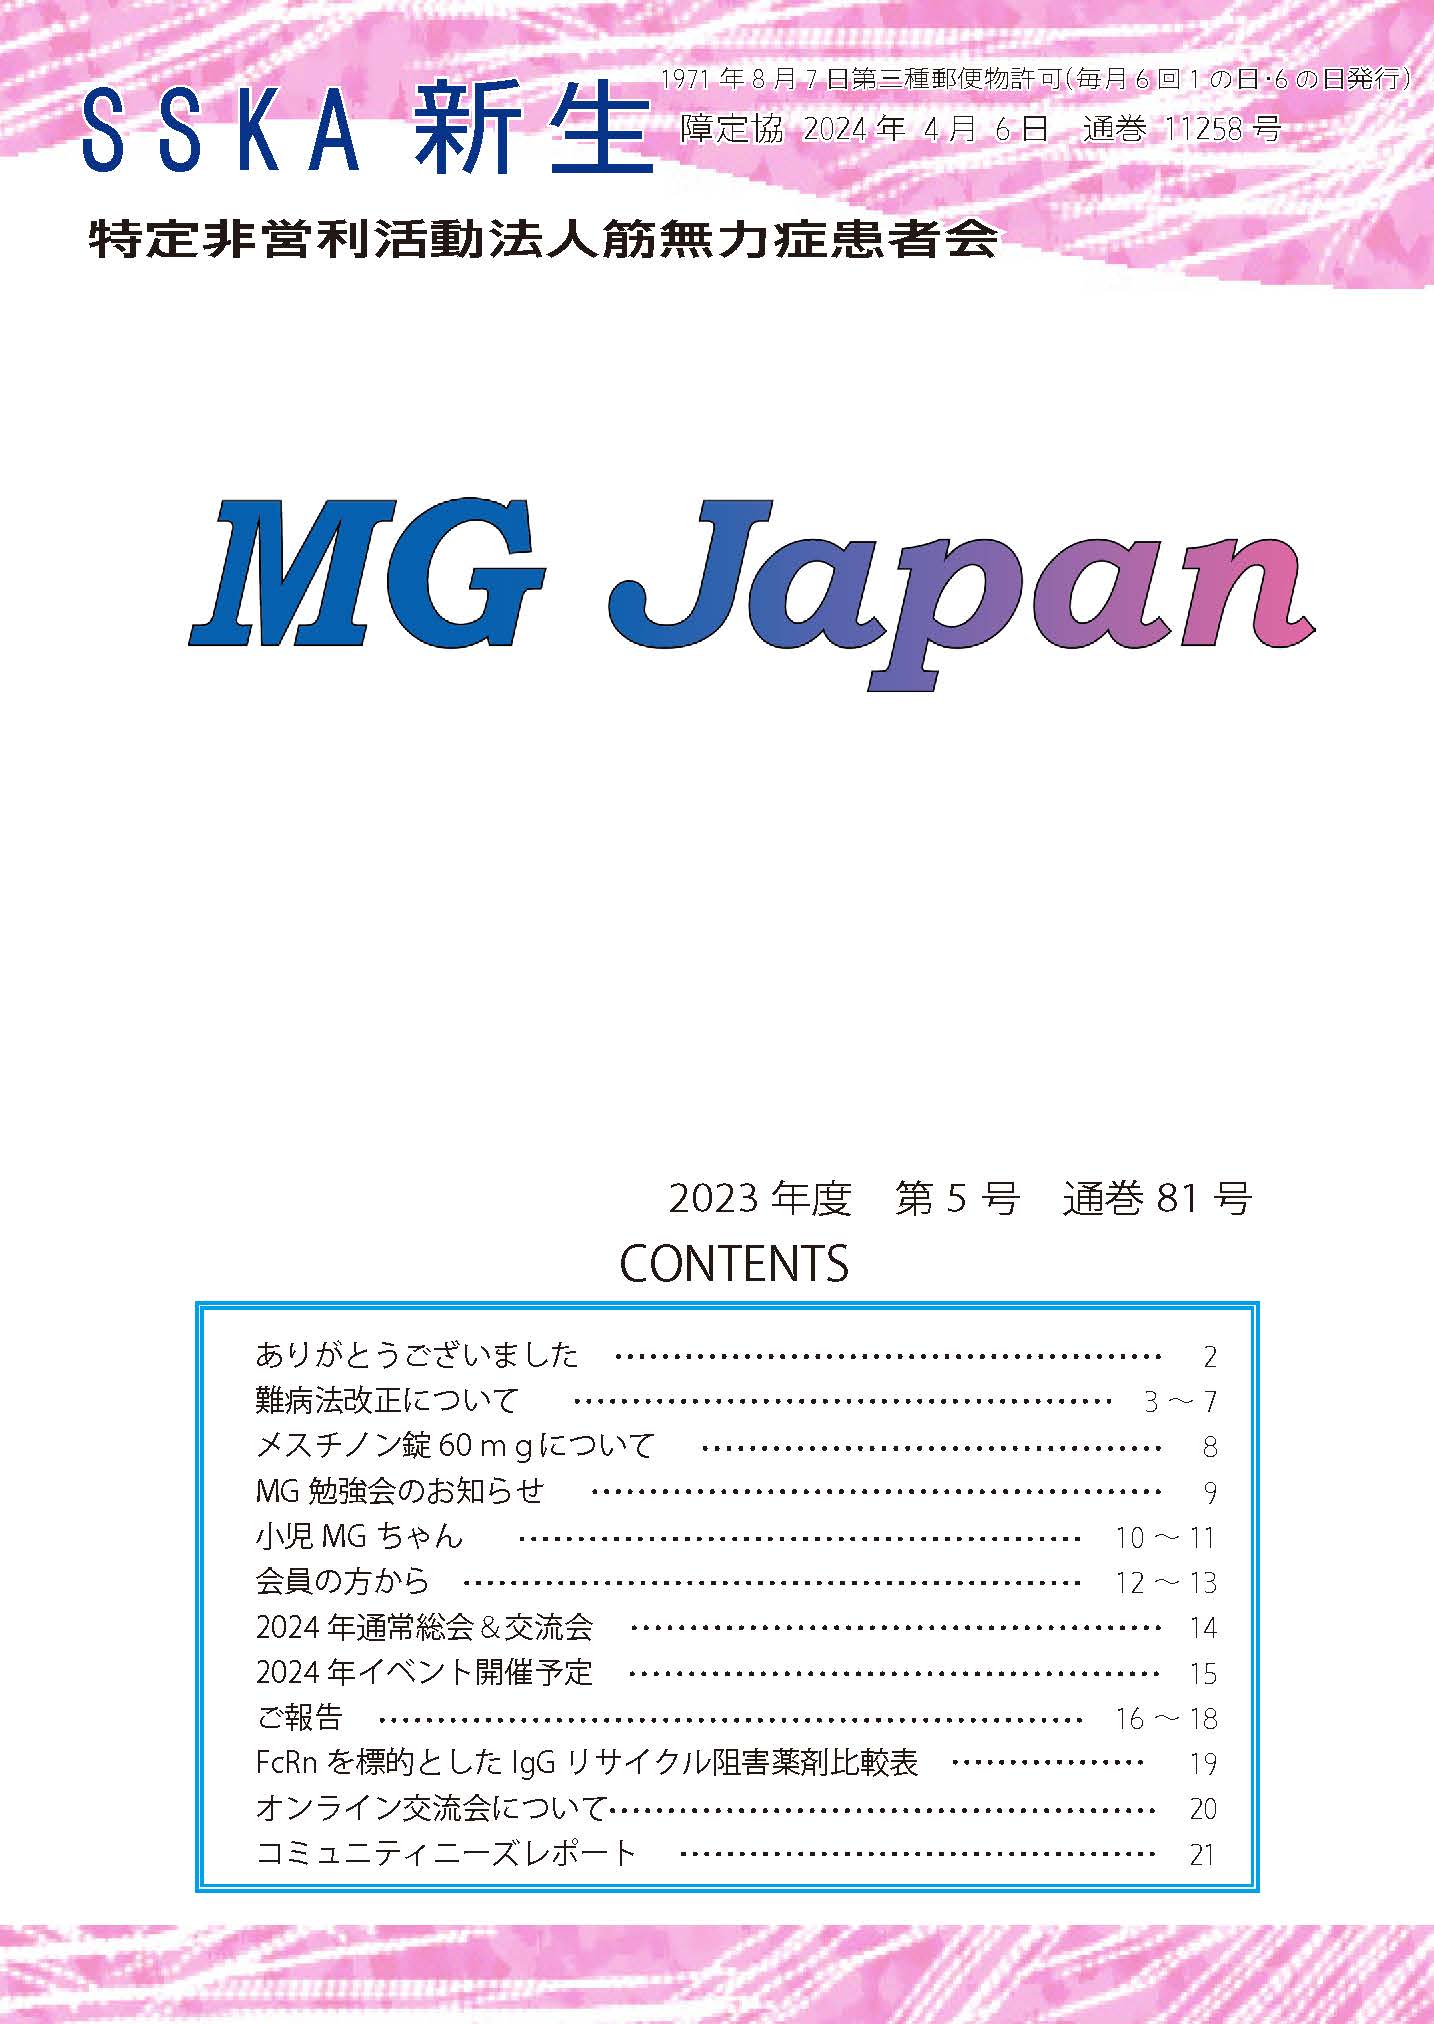 会報「MG Japan81号」